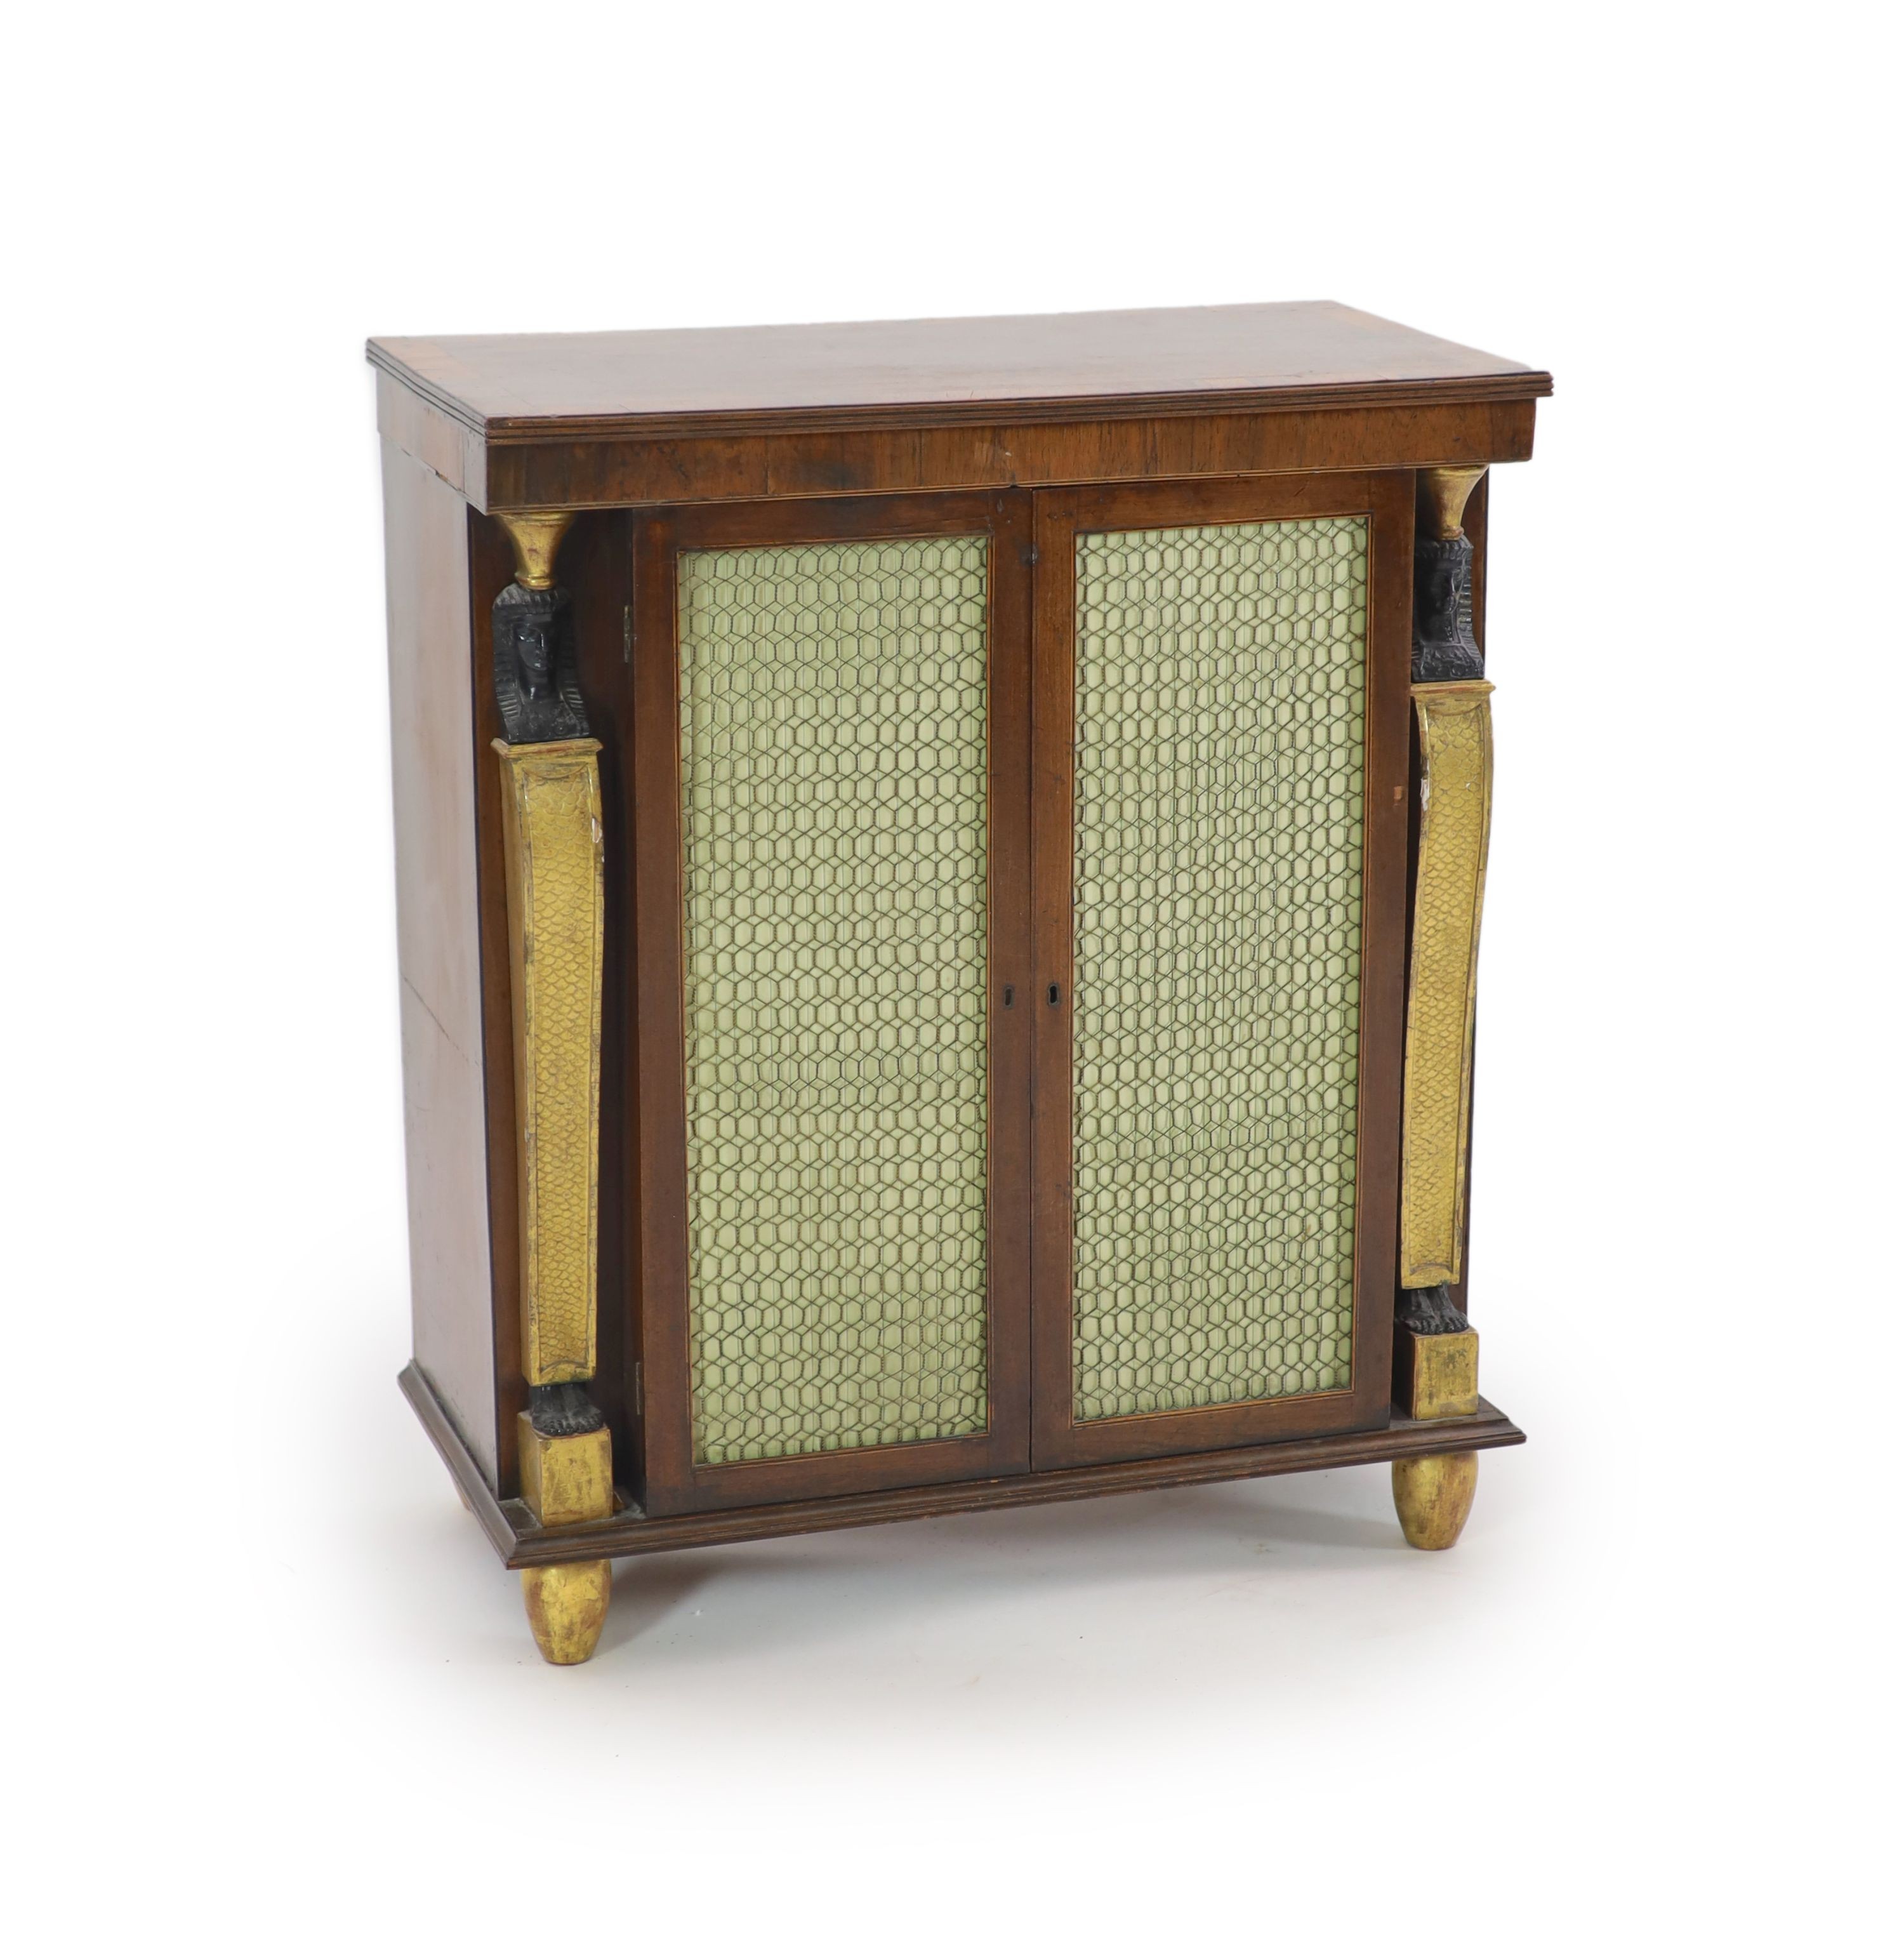 A Regency crossbanded mahogany dwarf bookcase, W.74cm D.40cm H.87cm